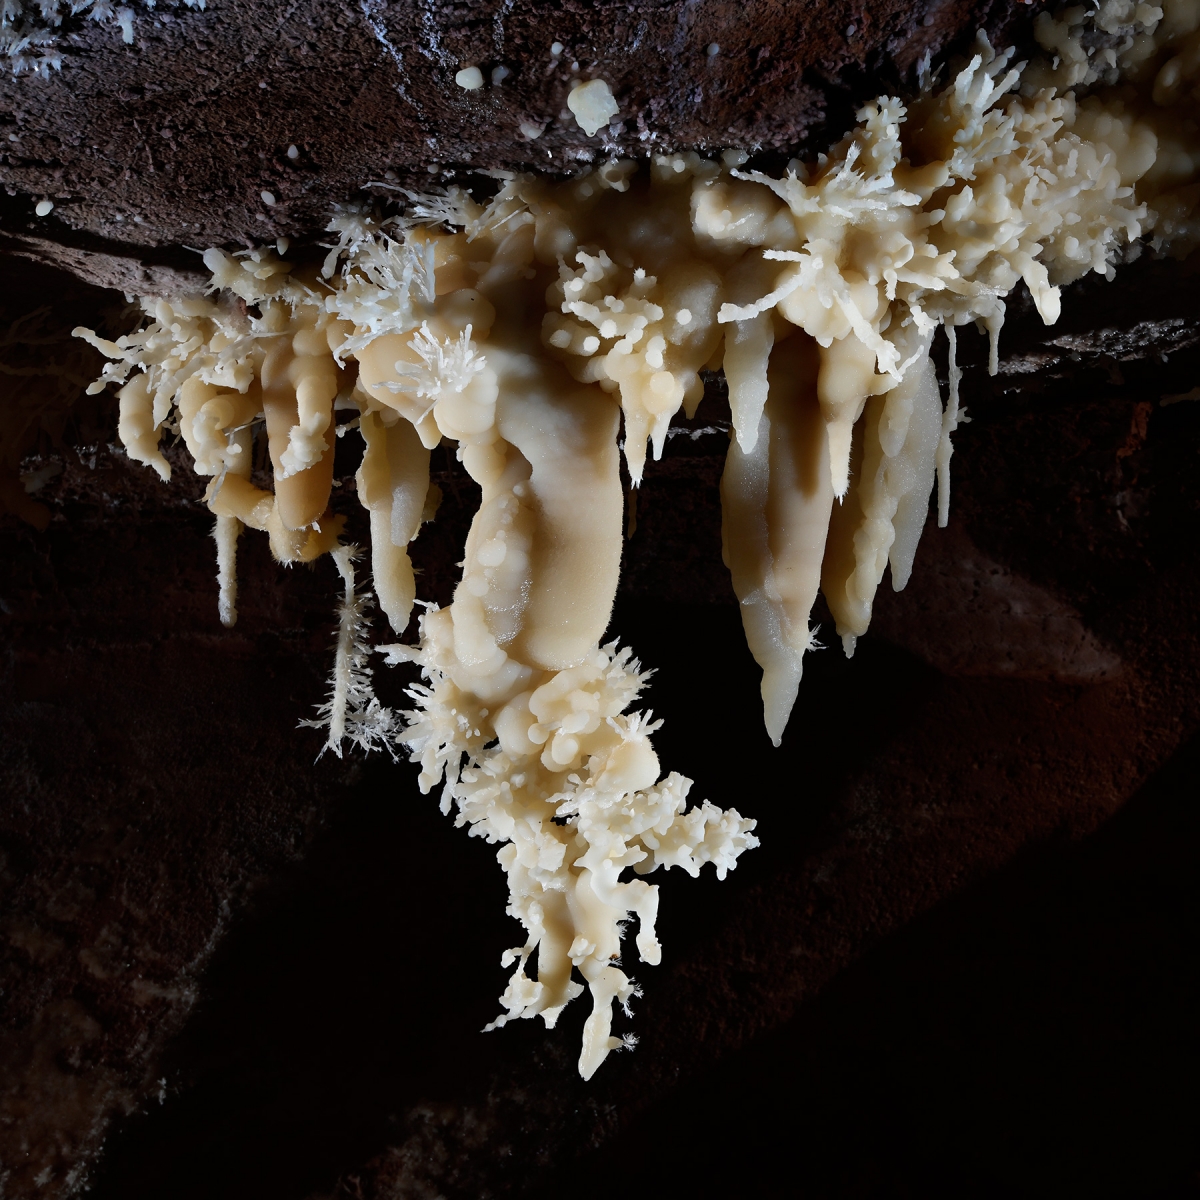 Cave of the Winds (USA - Colorado) - Bouquet de stalactites couvertes d'excentriques blanches 